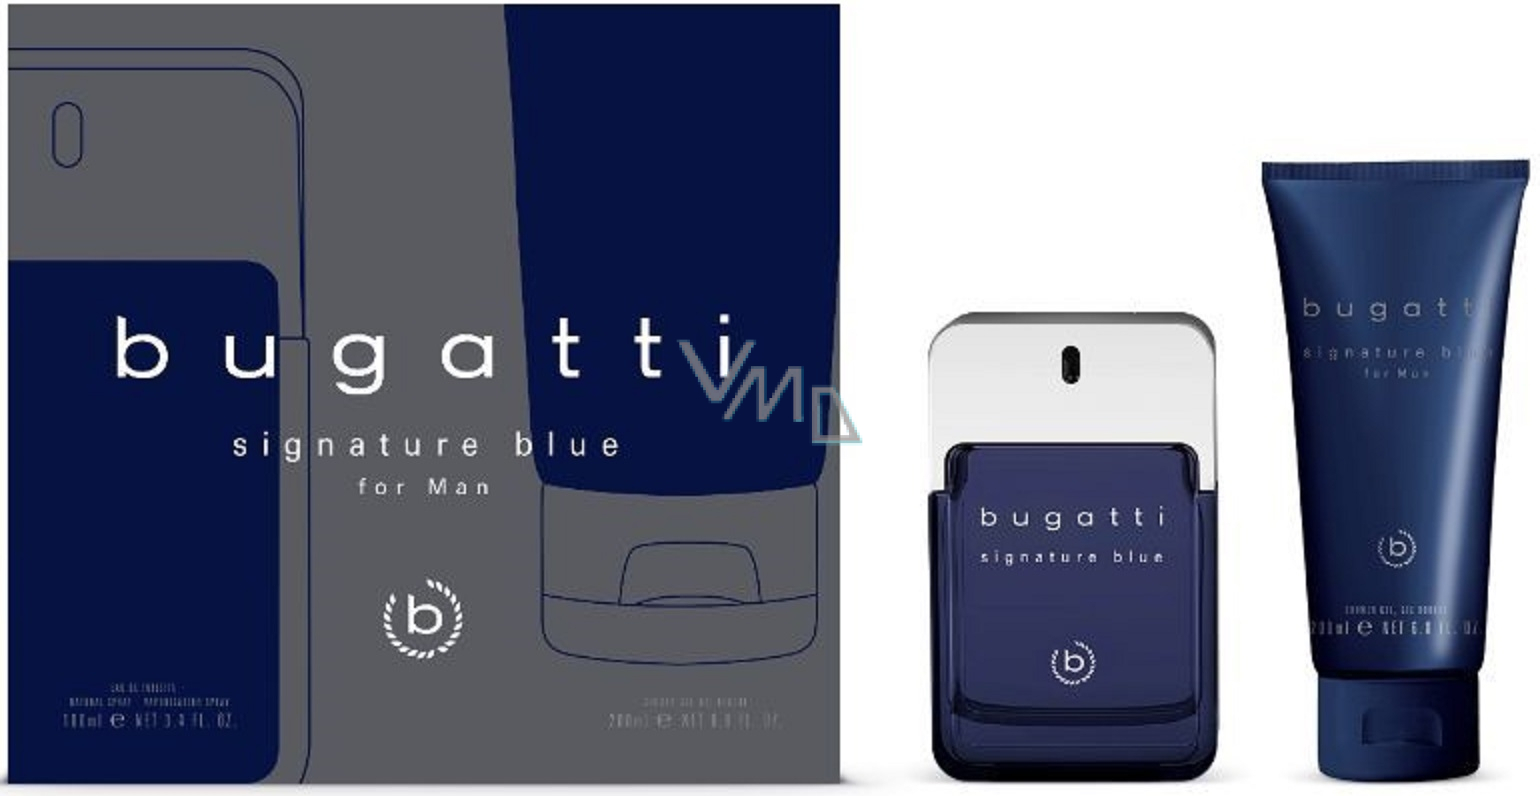 Bugatti Signature Blue eau de toilette 100 ml + shower gel 200 ml, gift set  for men - VMD parfumerie - drogerie